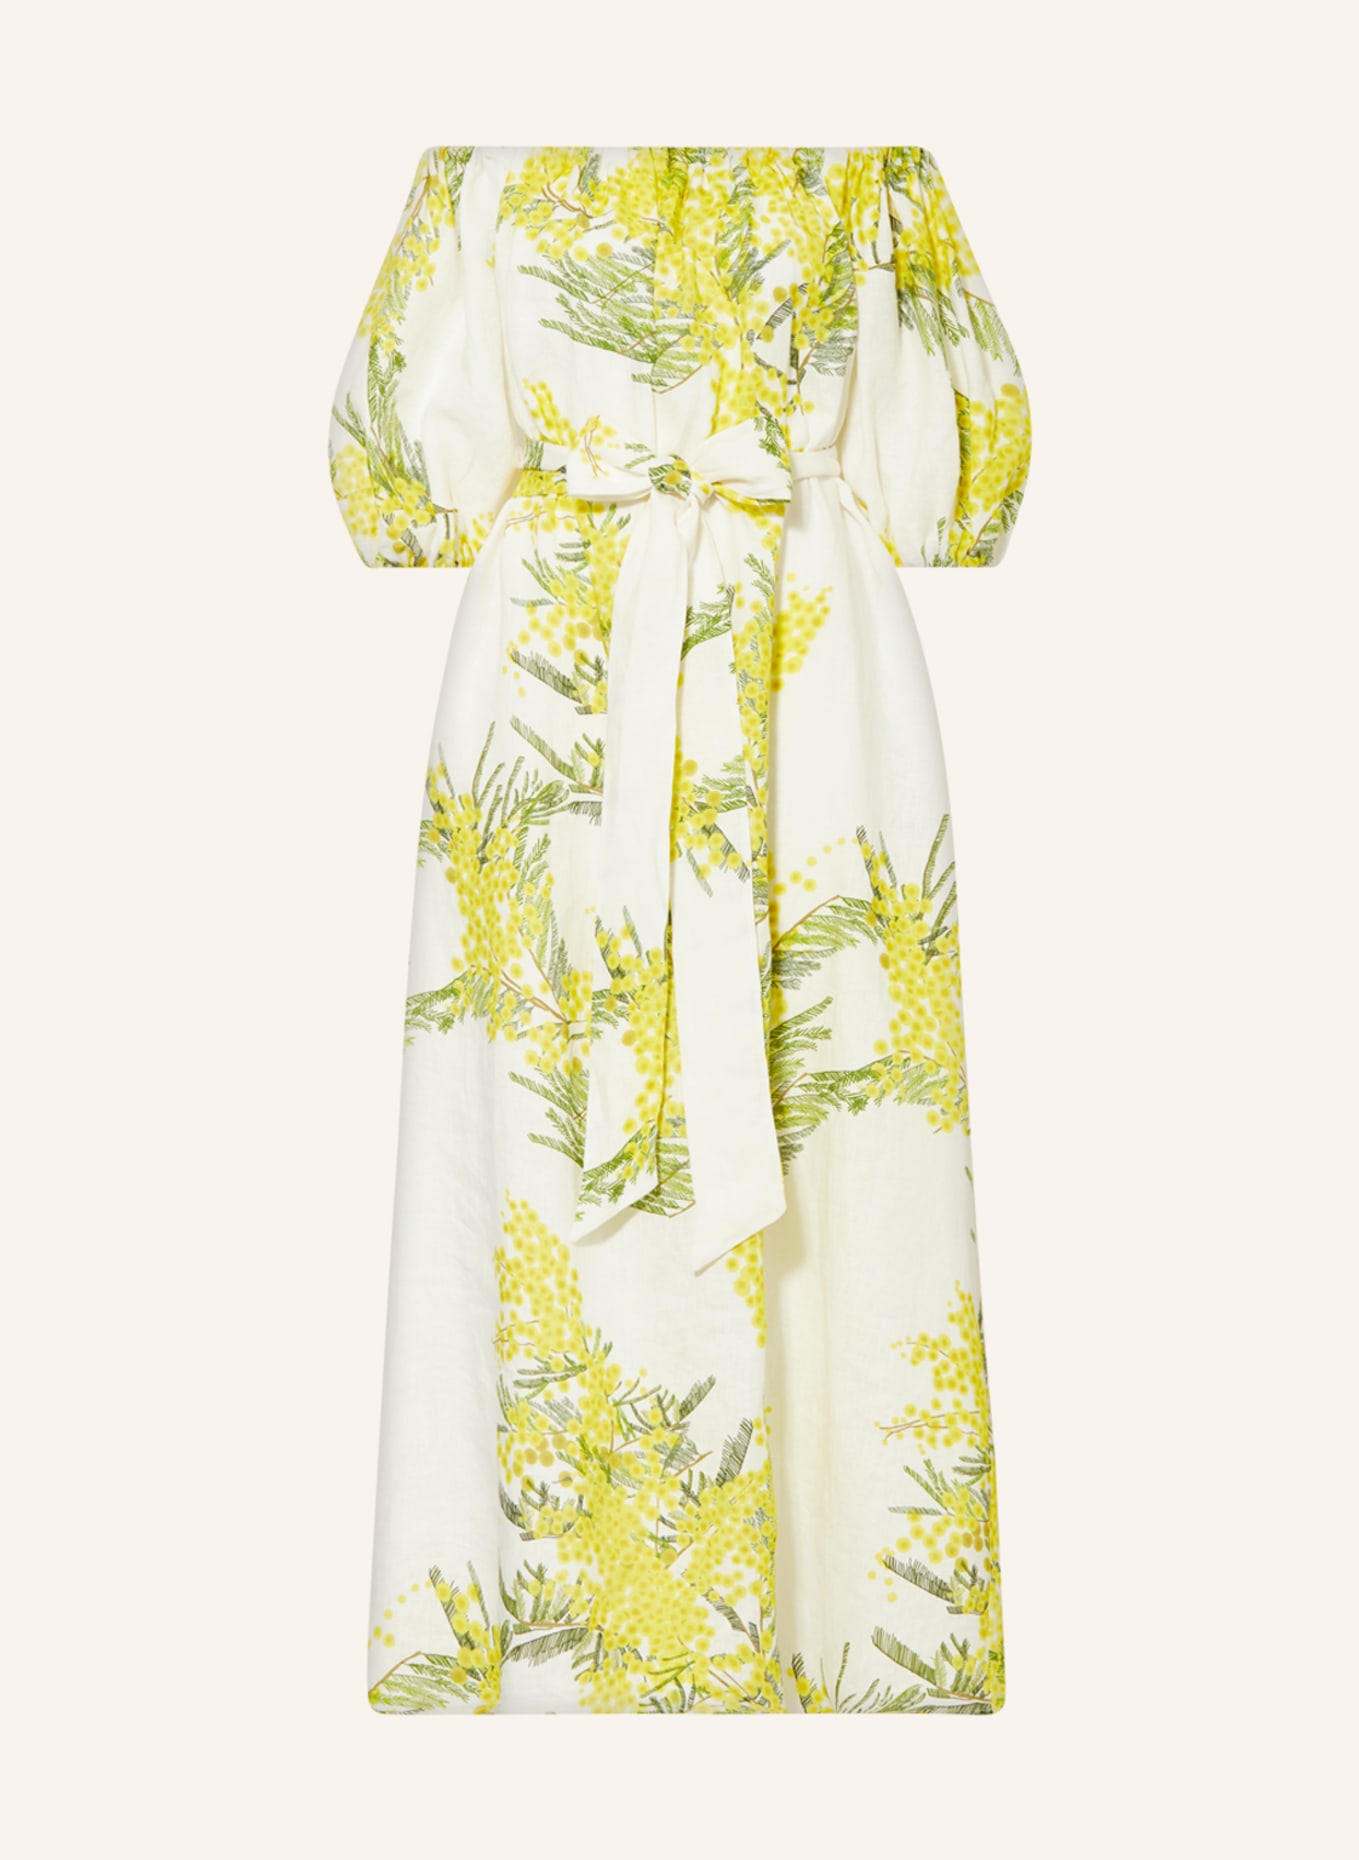 BERNADETTE Linen dress ZAZA, Color: YELLOW/ GREEN/ ECRU (Image 1)